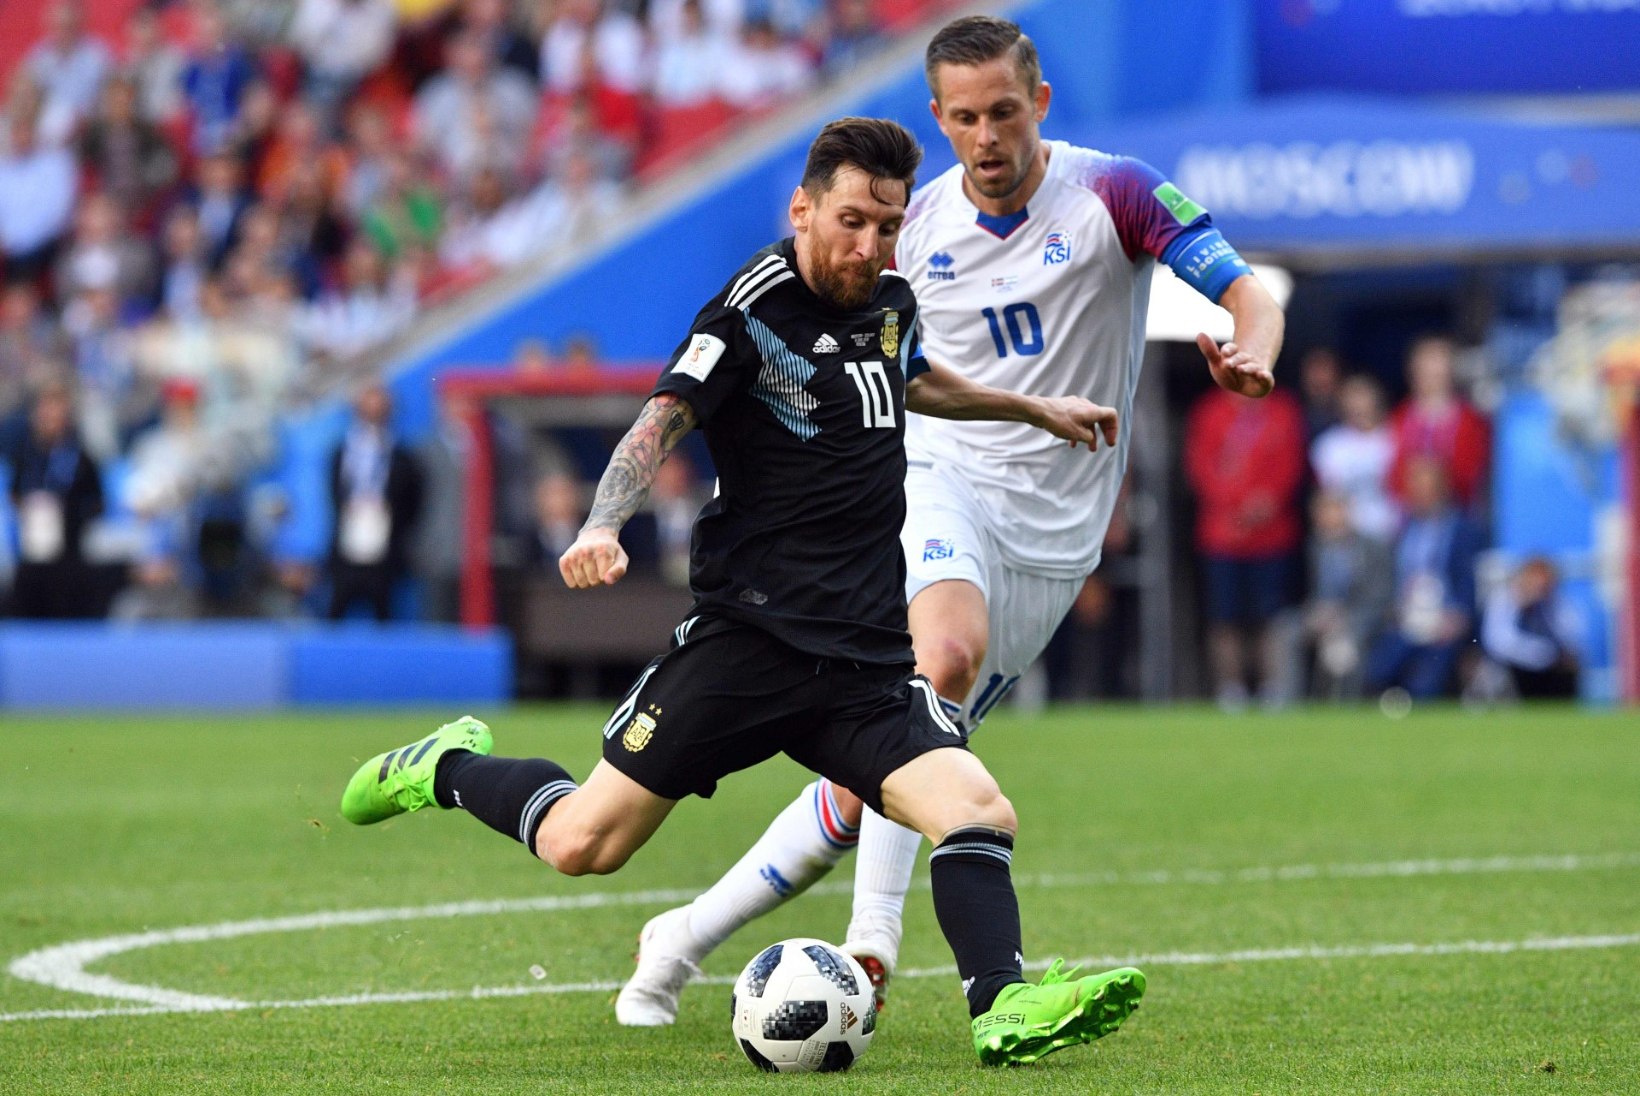 DEJA VU? Island võib veel ühe korra Messi ja Argentina tee sulgeda